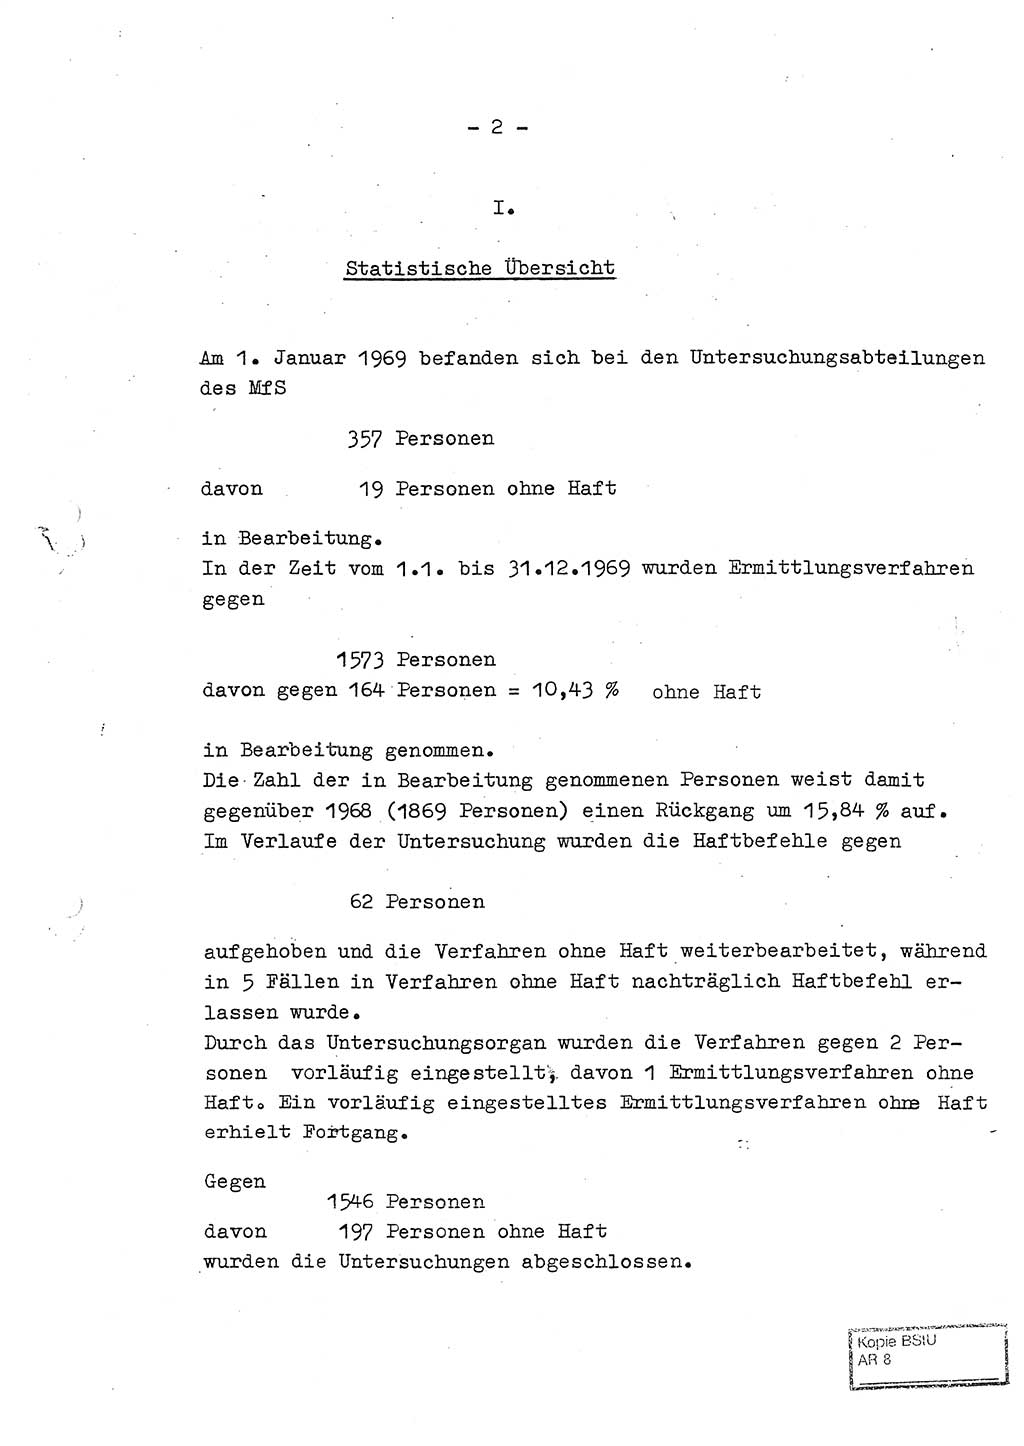 Jahresbericht der Hauptabteilung (HA) Ⅸ 1969 des Ministeriums für Staatssicherheit (MfS) der Deutschen Demokratischen Republik (DDR), Berlin 1970, Seite 2 (J.-Ber. MfS DDR HA Ⅸ /69 1970, S. 2)